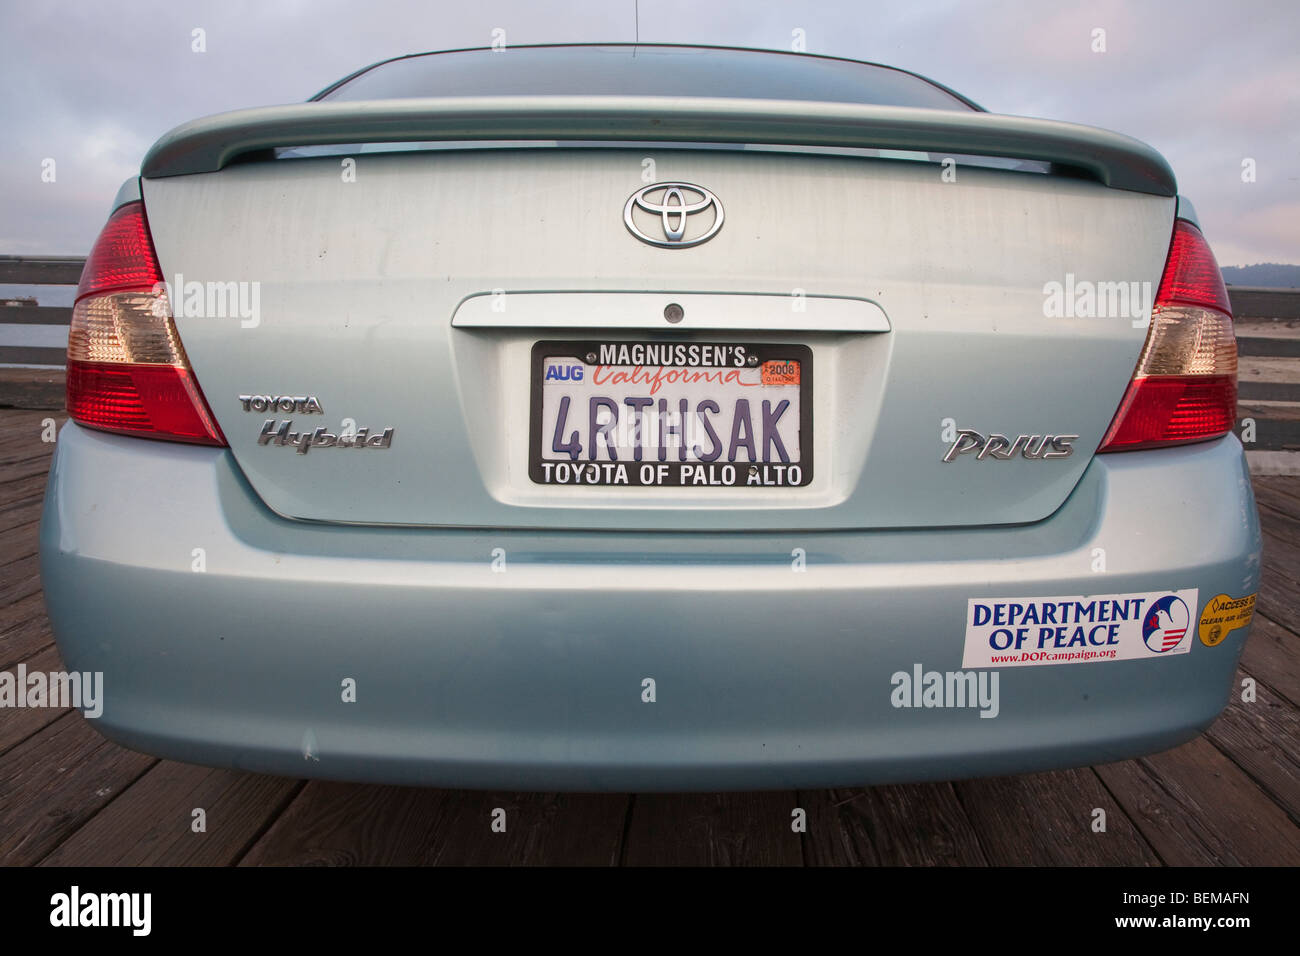 Rückansicht des "4RTHSAK" (der Erde zuliebe) benutzerdefinierte Platte auf einem grauen Toyota Prius Hybrid-Auto. Kalifornien, USA Stockfoto